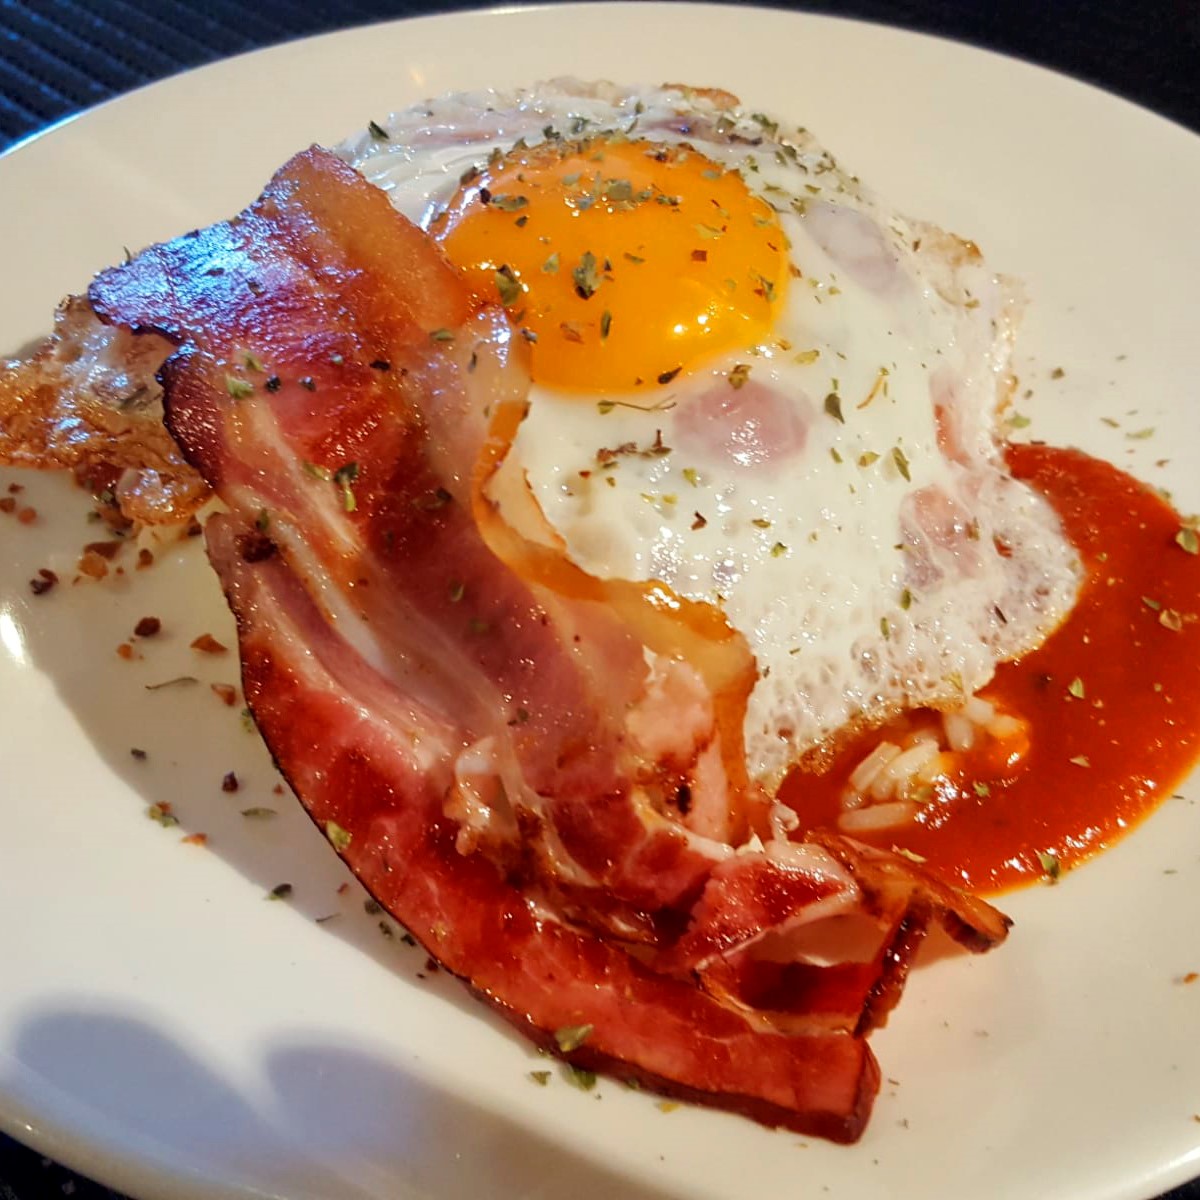 bacon-y-huevo-con-tomate-restaurante-el-rincon-de-barrika-bizkaia.jpg